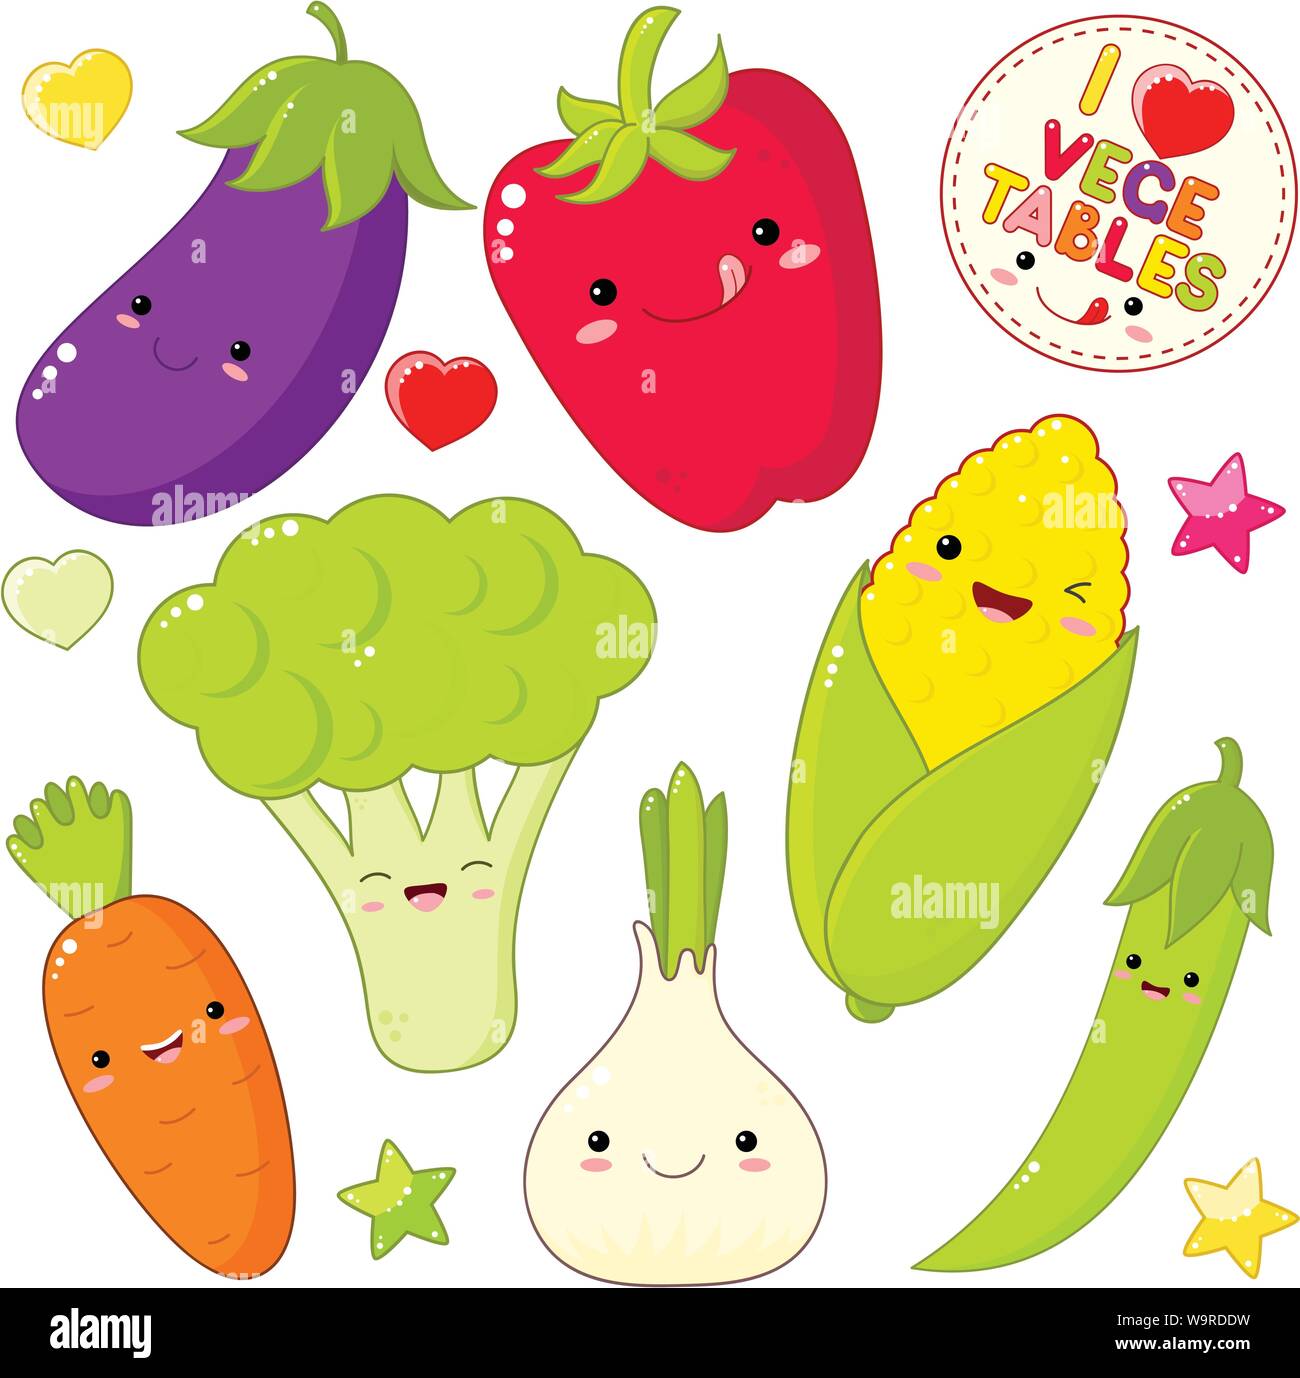 Ensemble d'icônes de légumes cute kawaii style avec sourire et joues roses. Autocollant avec l'inscription J'adore les légumes. L'oignon, carotte, poivron, eggp Illustration de Vecteur